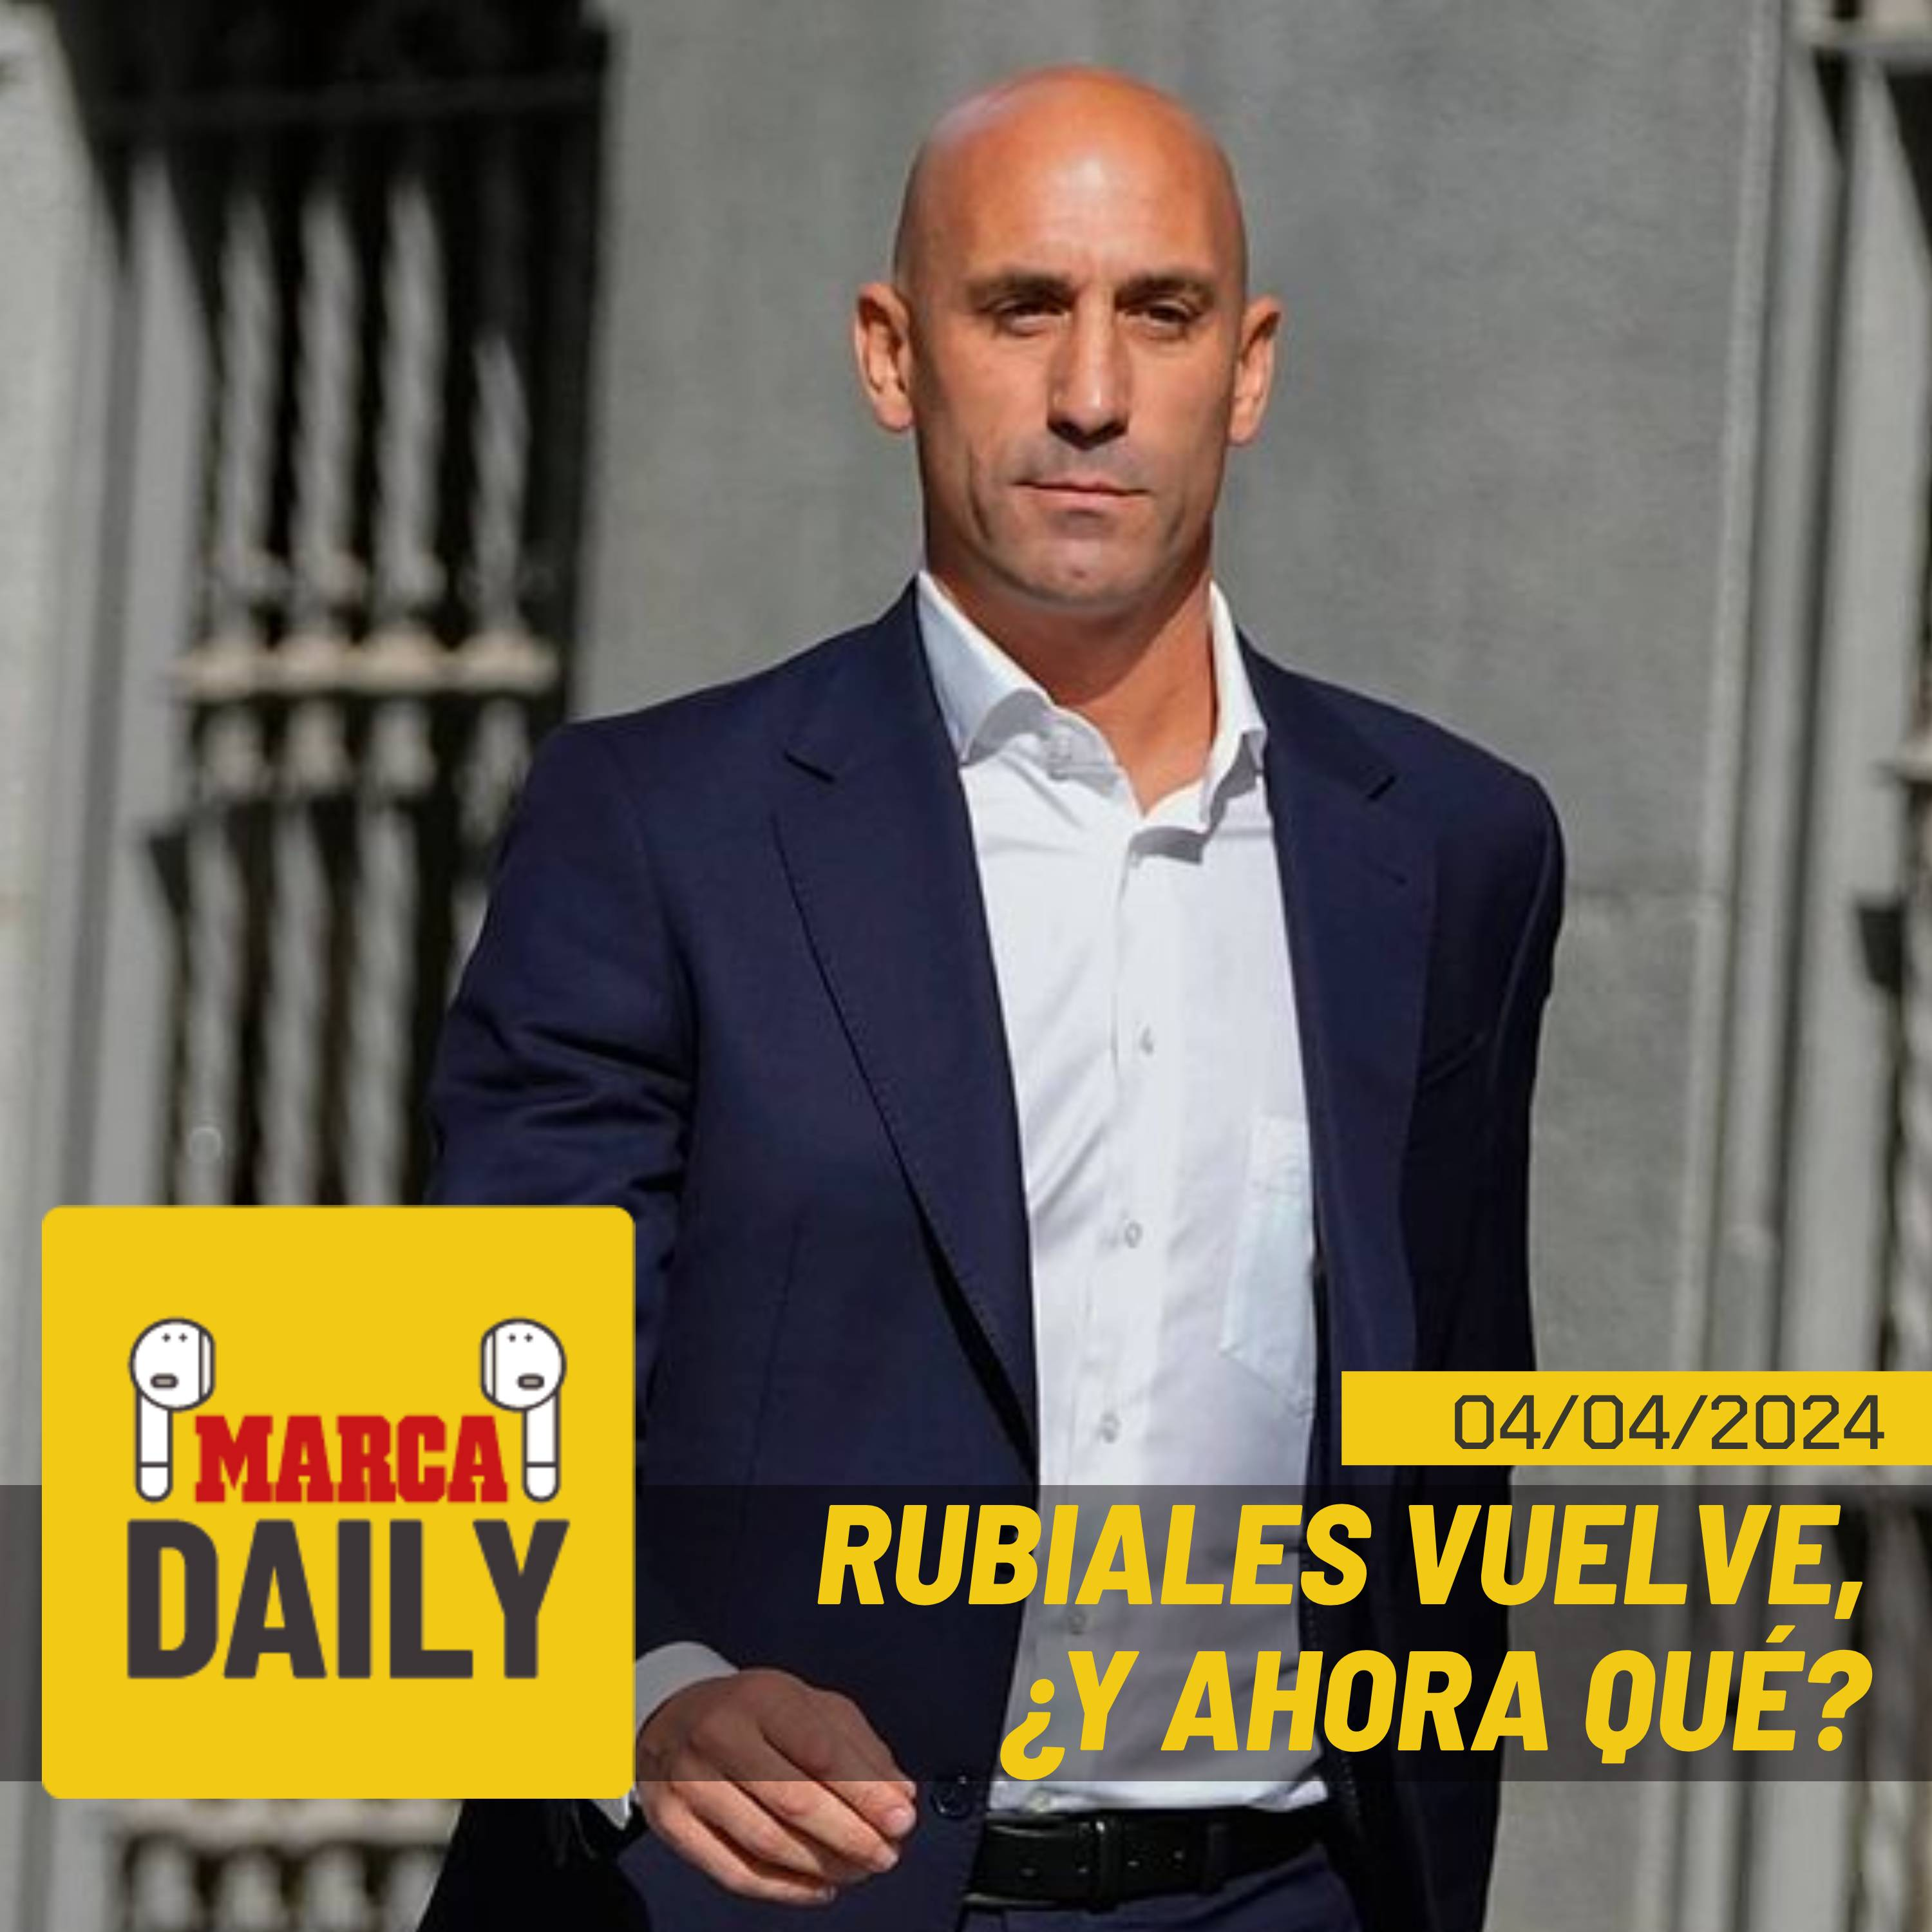 Luis Rubiales vuelve a España... ¿Y ahora qué?